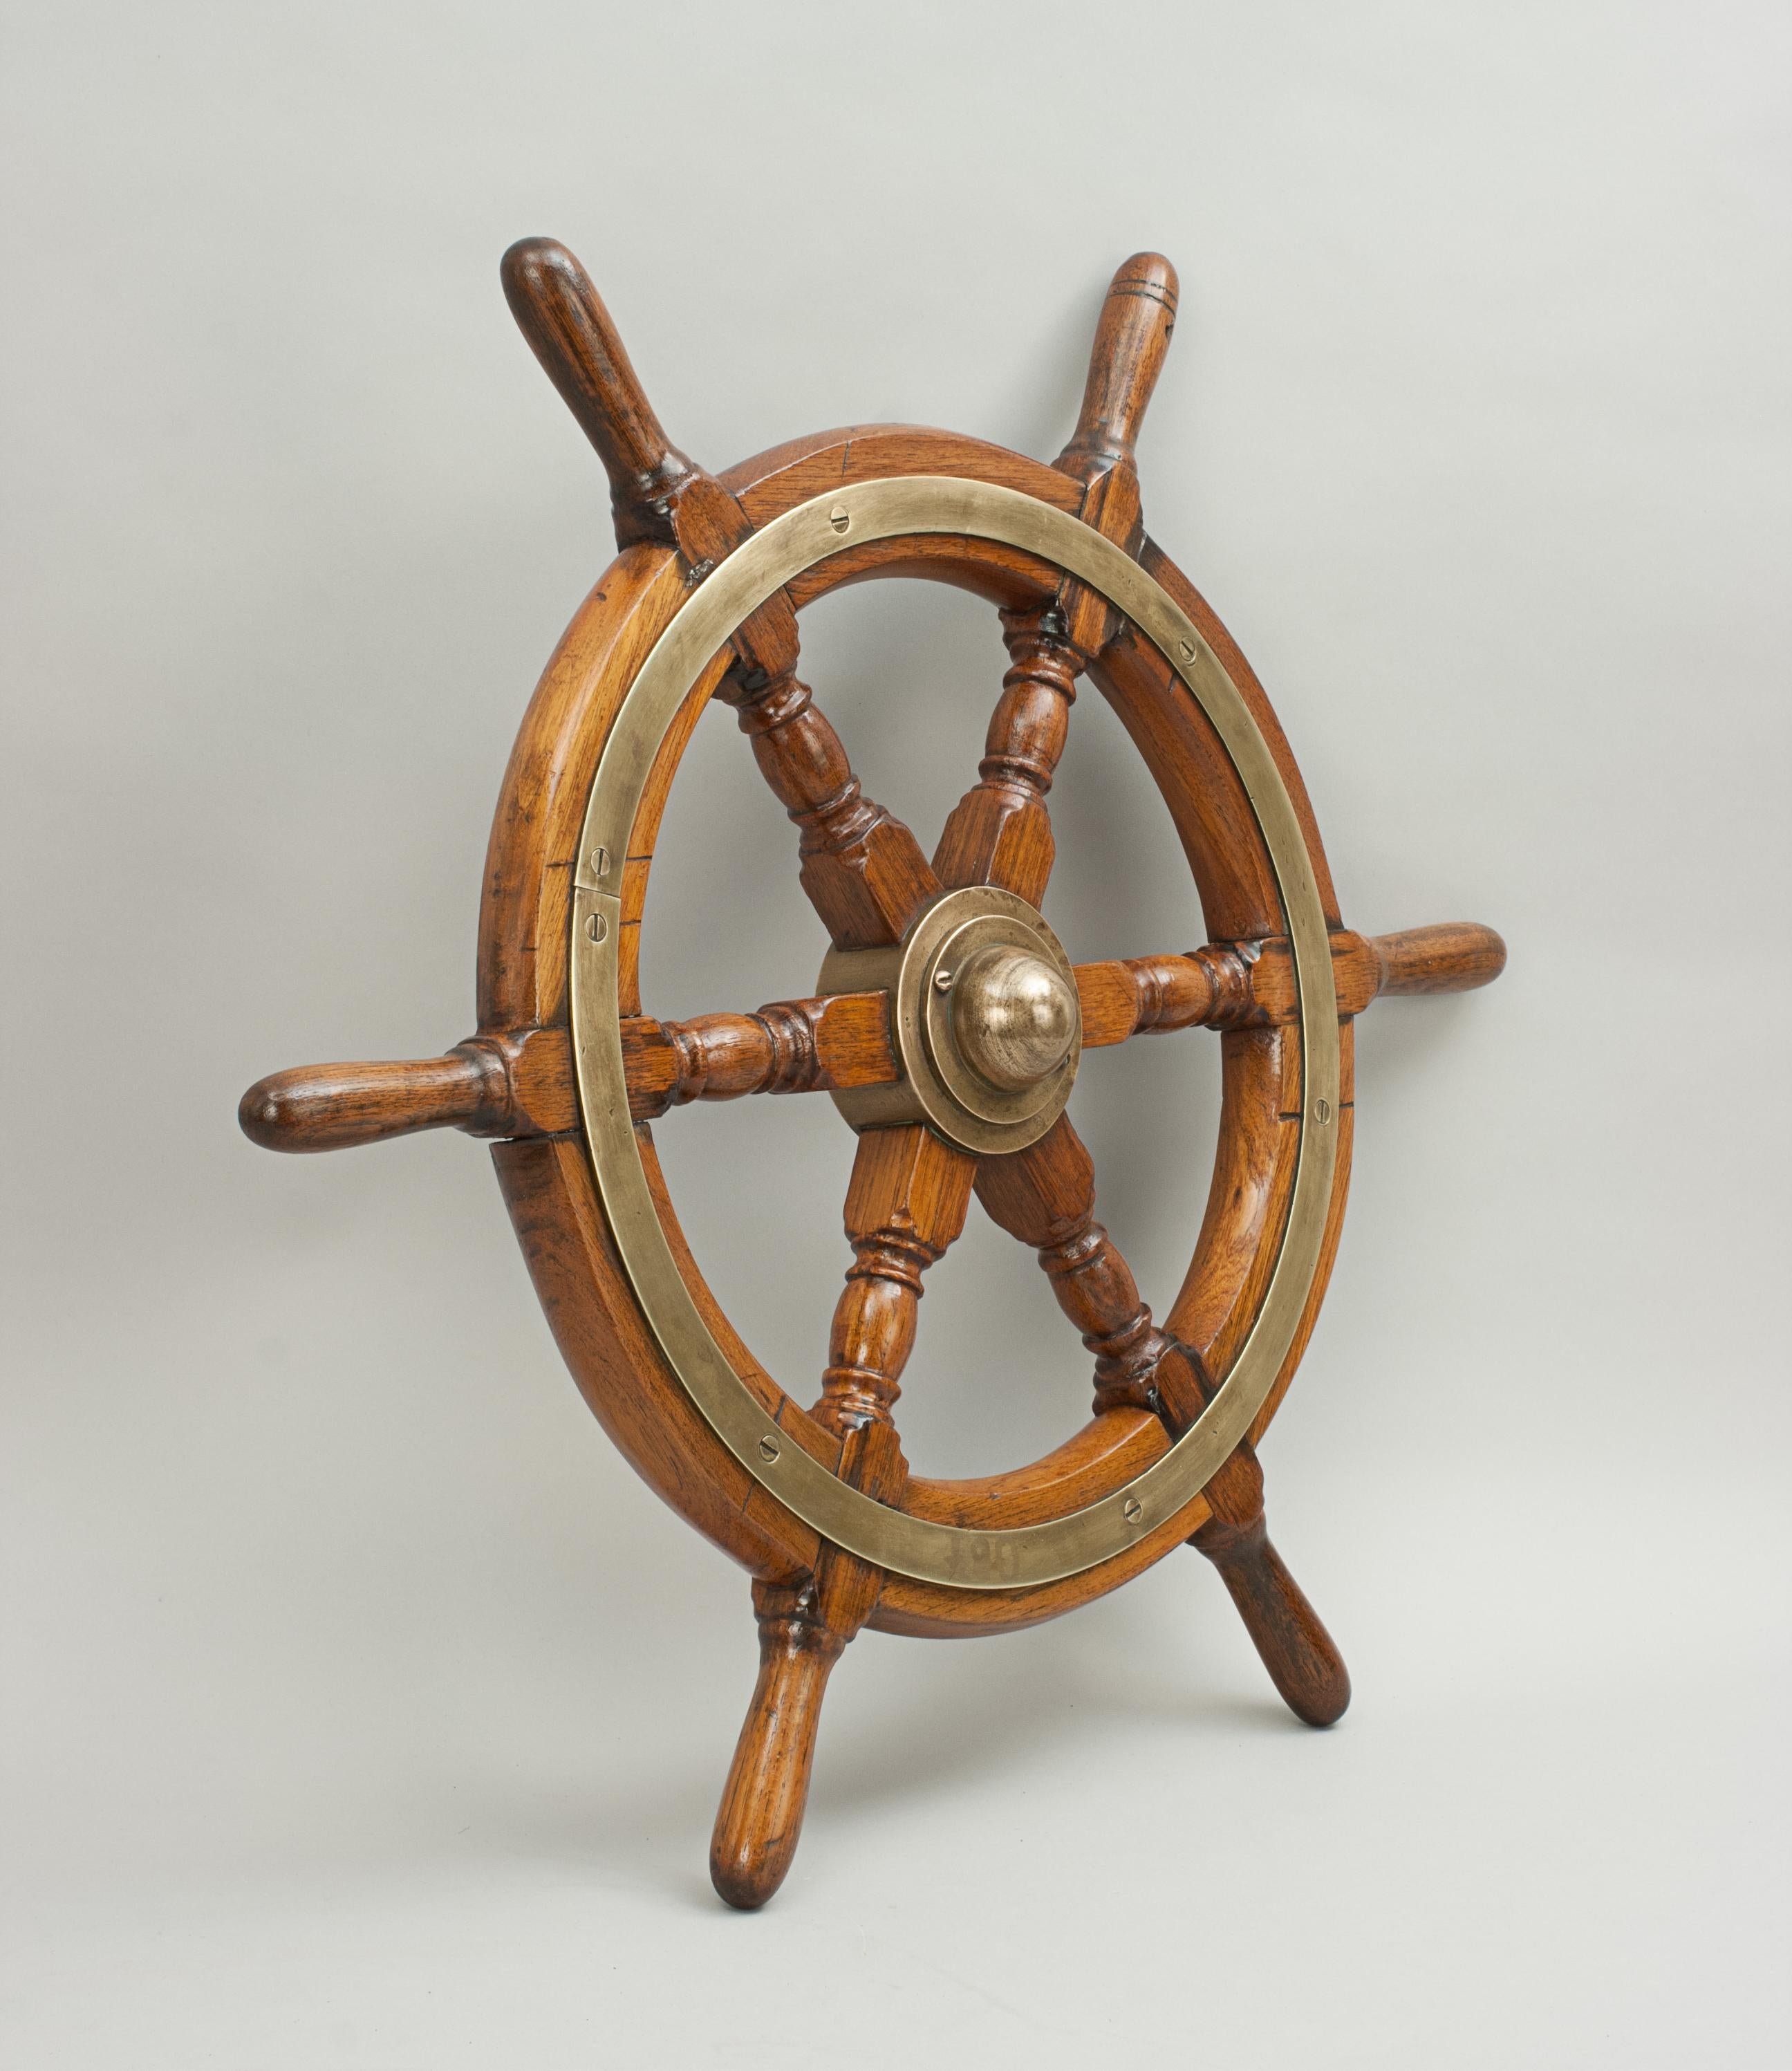 Vintage Teak Ships Wheel, 6 Spoke Helm Wheel, Teak and Brass 5